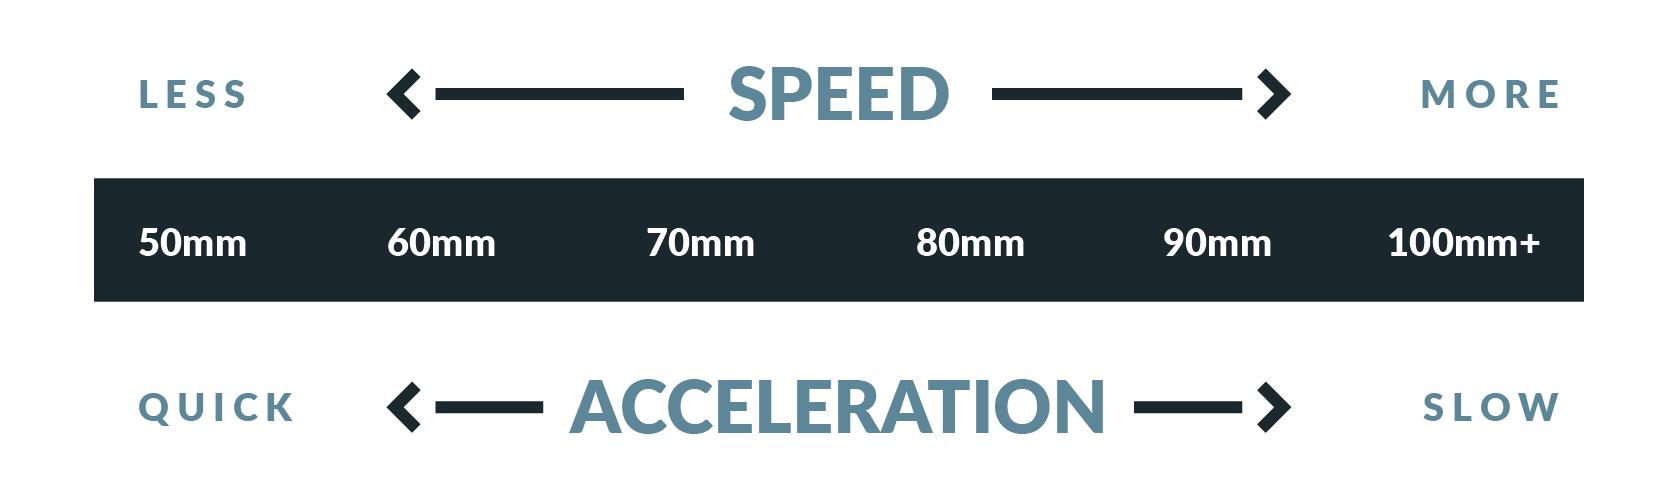 Hoe de wiel diameter de snelheid en acceleratie beïnvloed